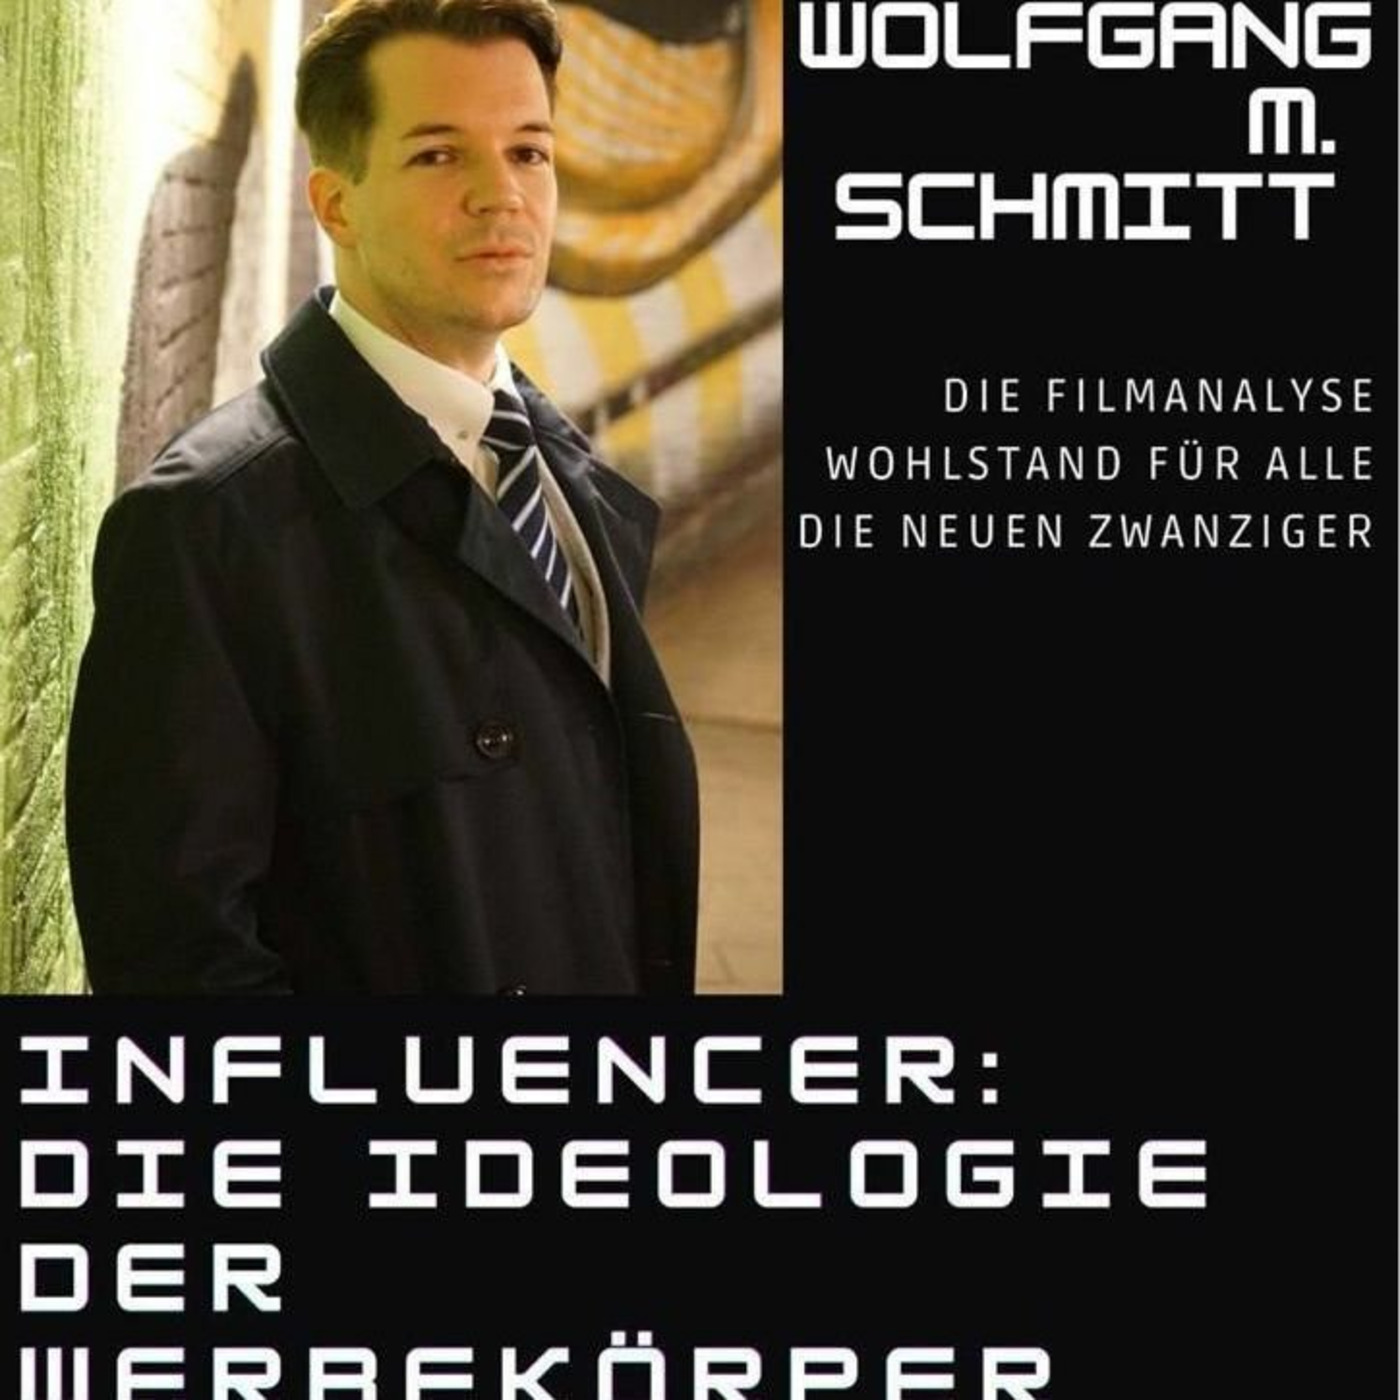 (Sendung 15.02.2023) Aufzeichnung von Wolfgang M Schmitt - Ideologie der Influencer (Vortrag vom 08.02.2023)